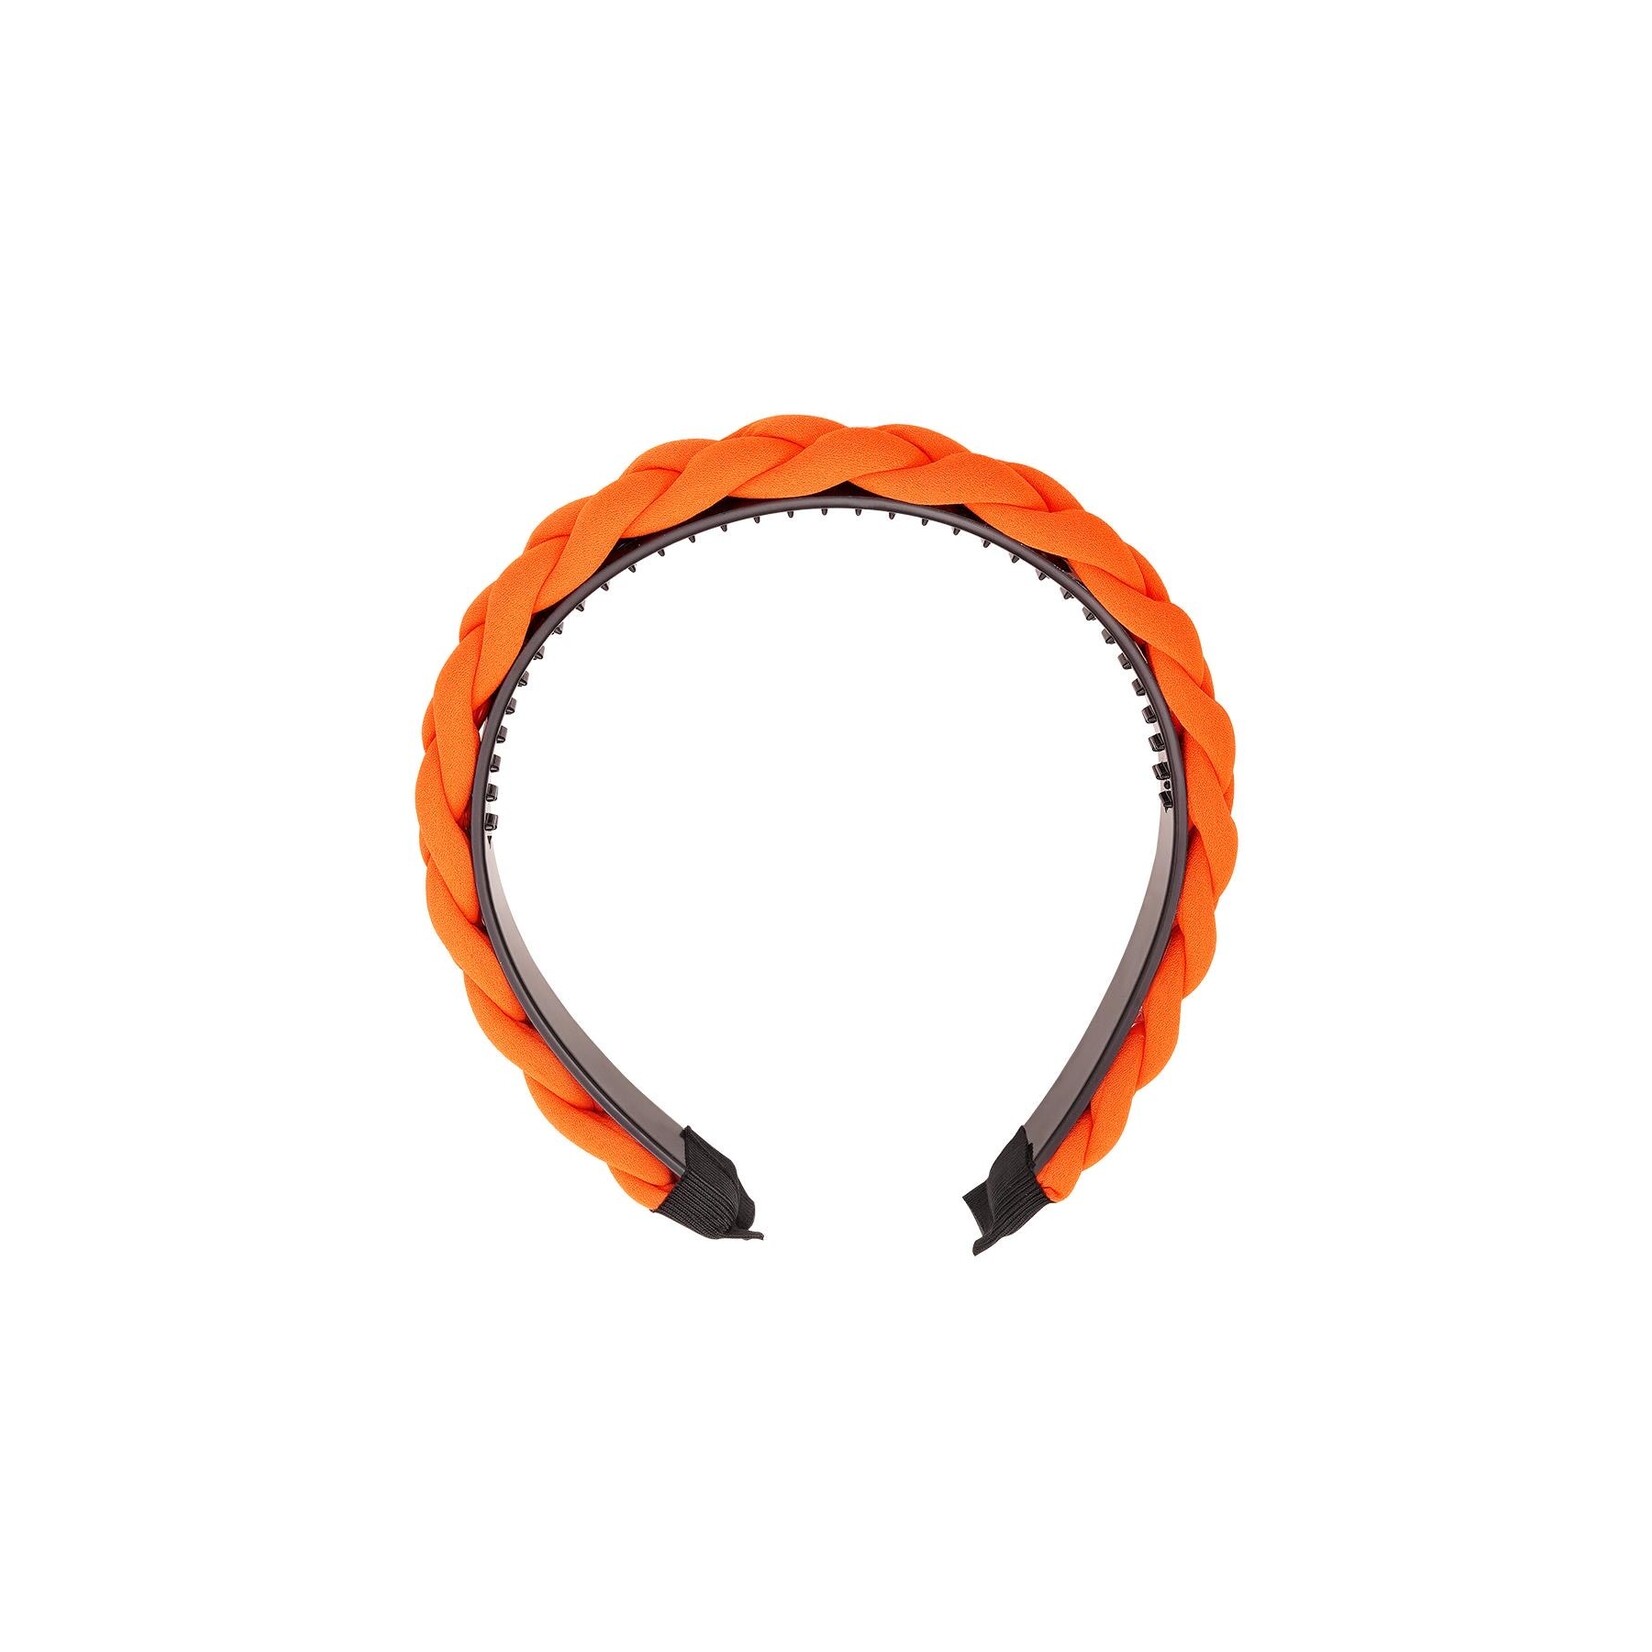 More the Firm Haarband gevlochten oranje